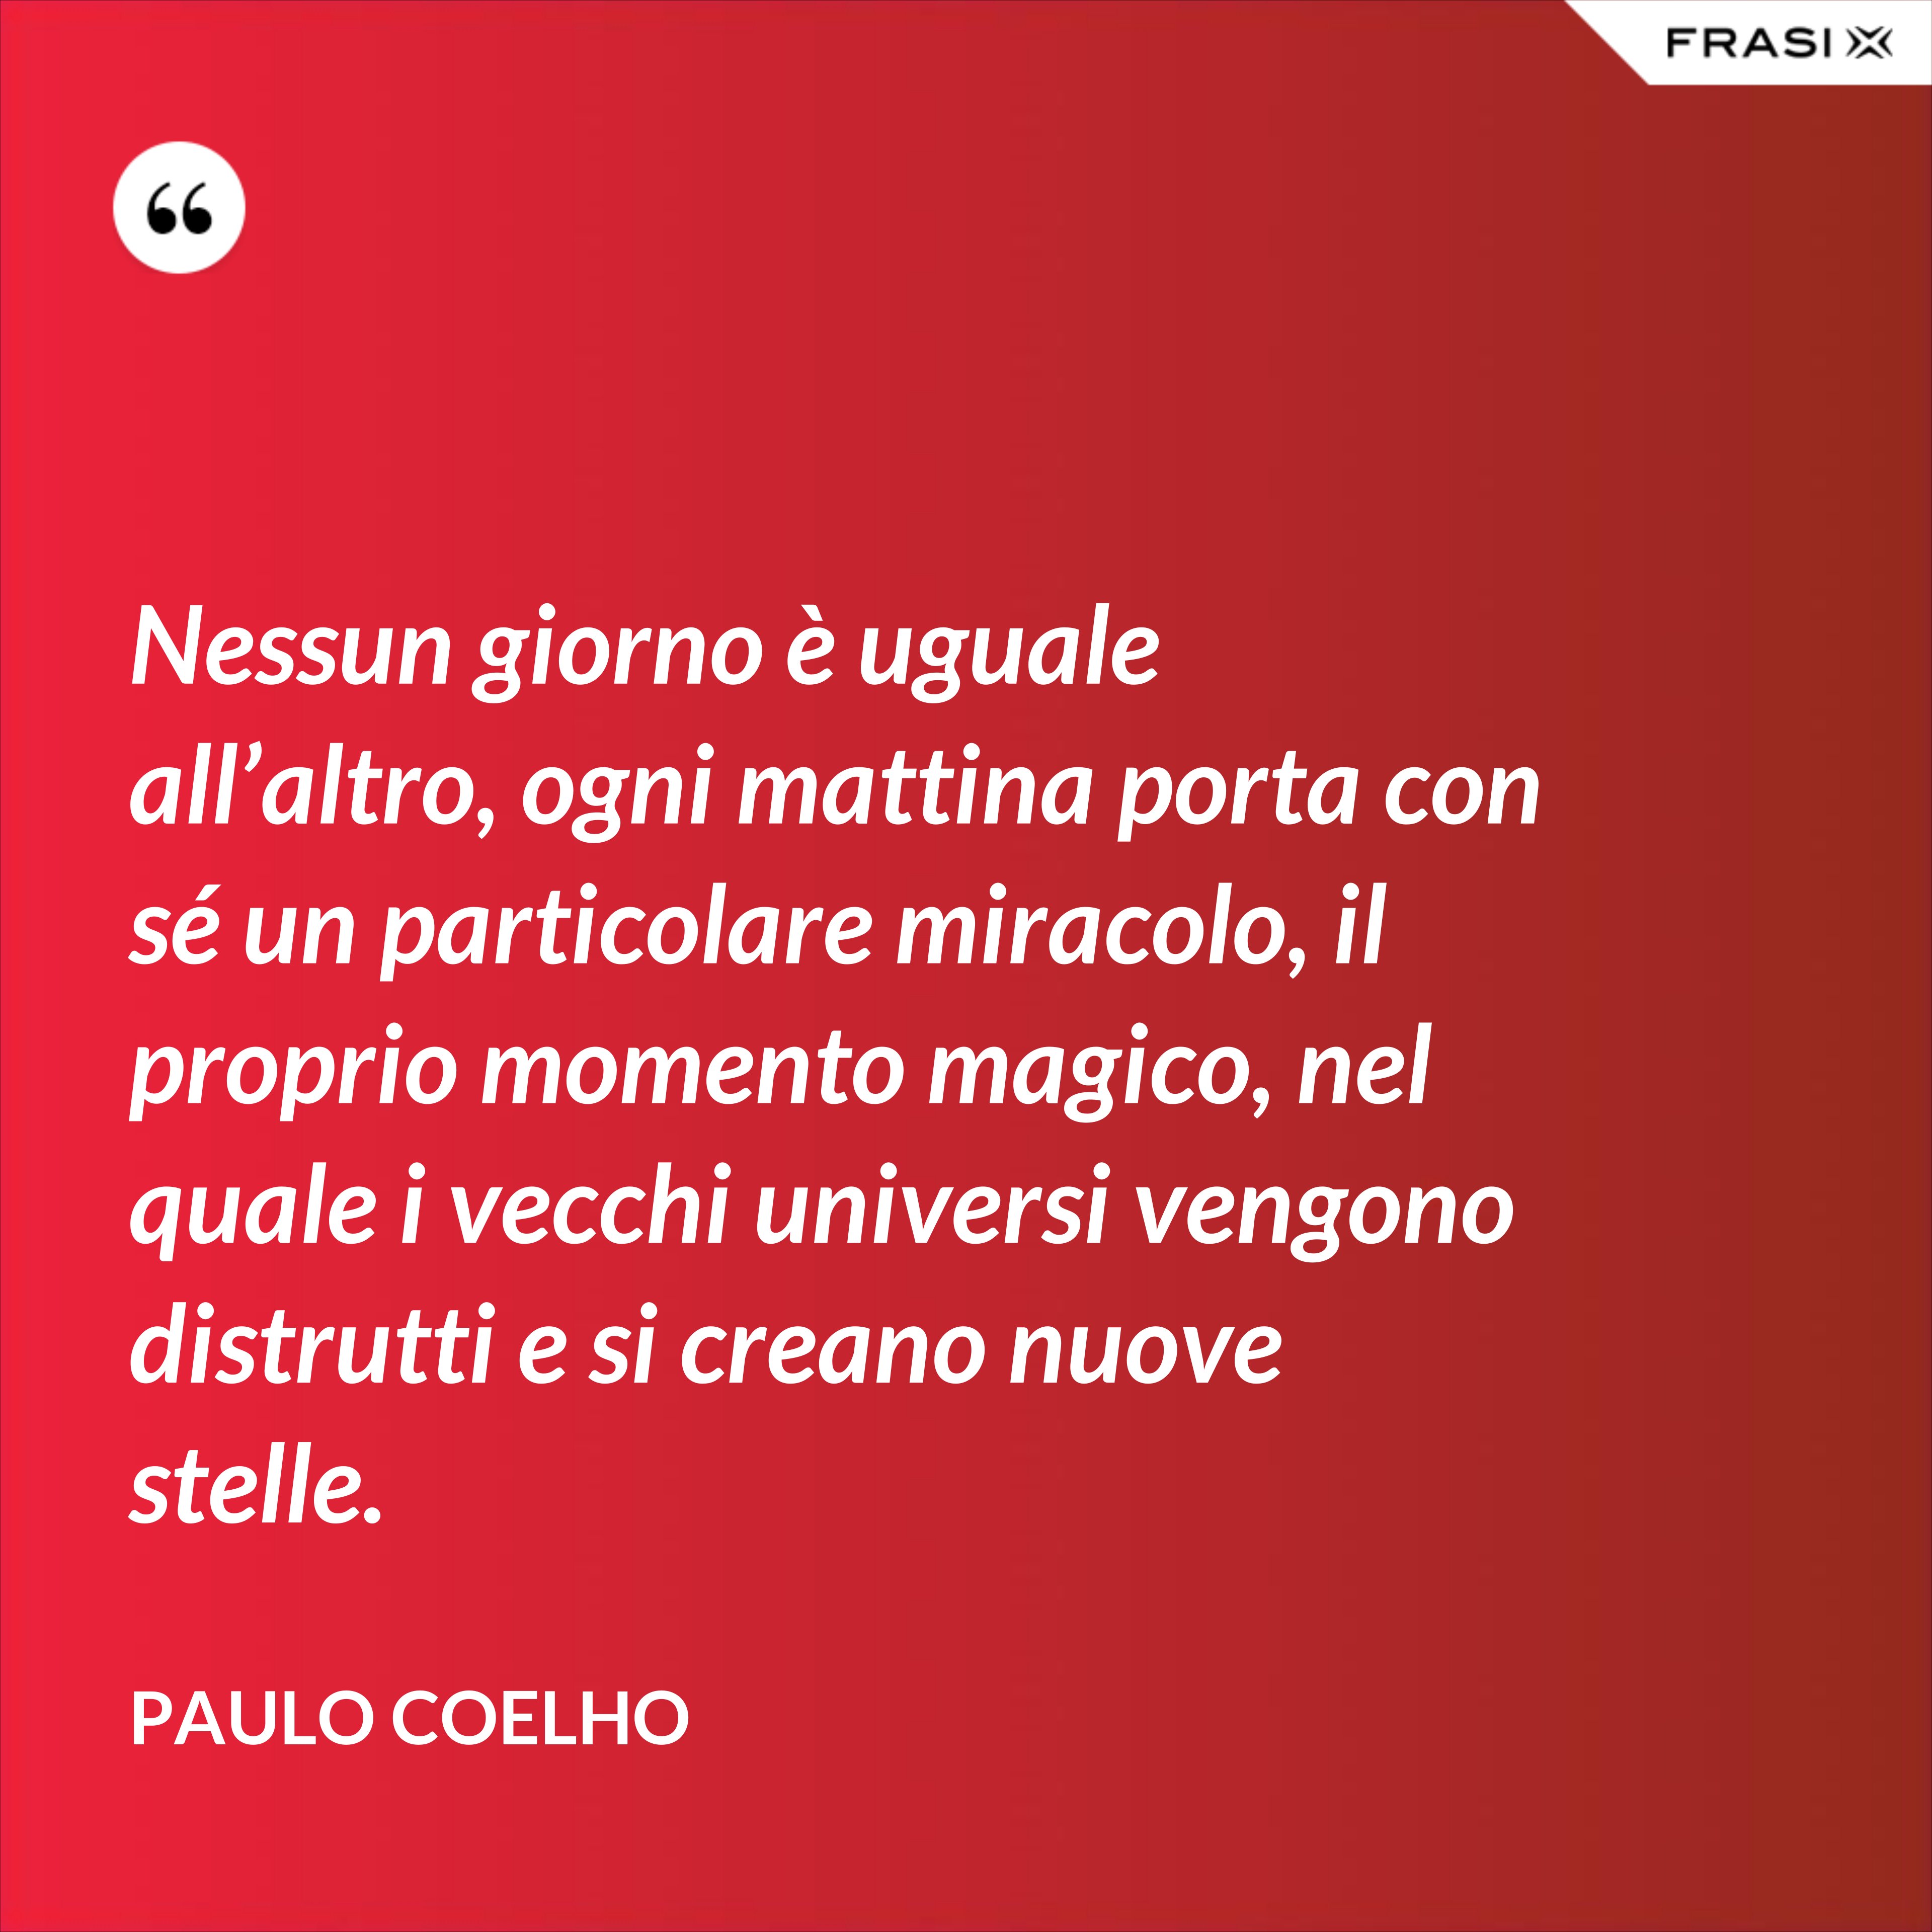 Nessun giorno è uguale all’altro, ogni mattina porta con sé un particolare miracolo, il proprio momento magico, nel quale i vecchi universi vengono distrutti e si creano nuove stelle. - Paulo Coelho